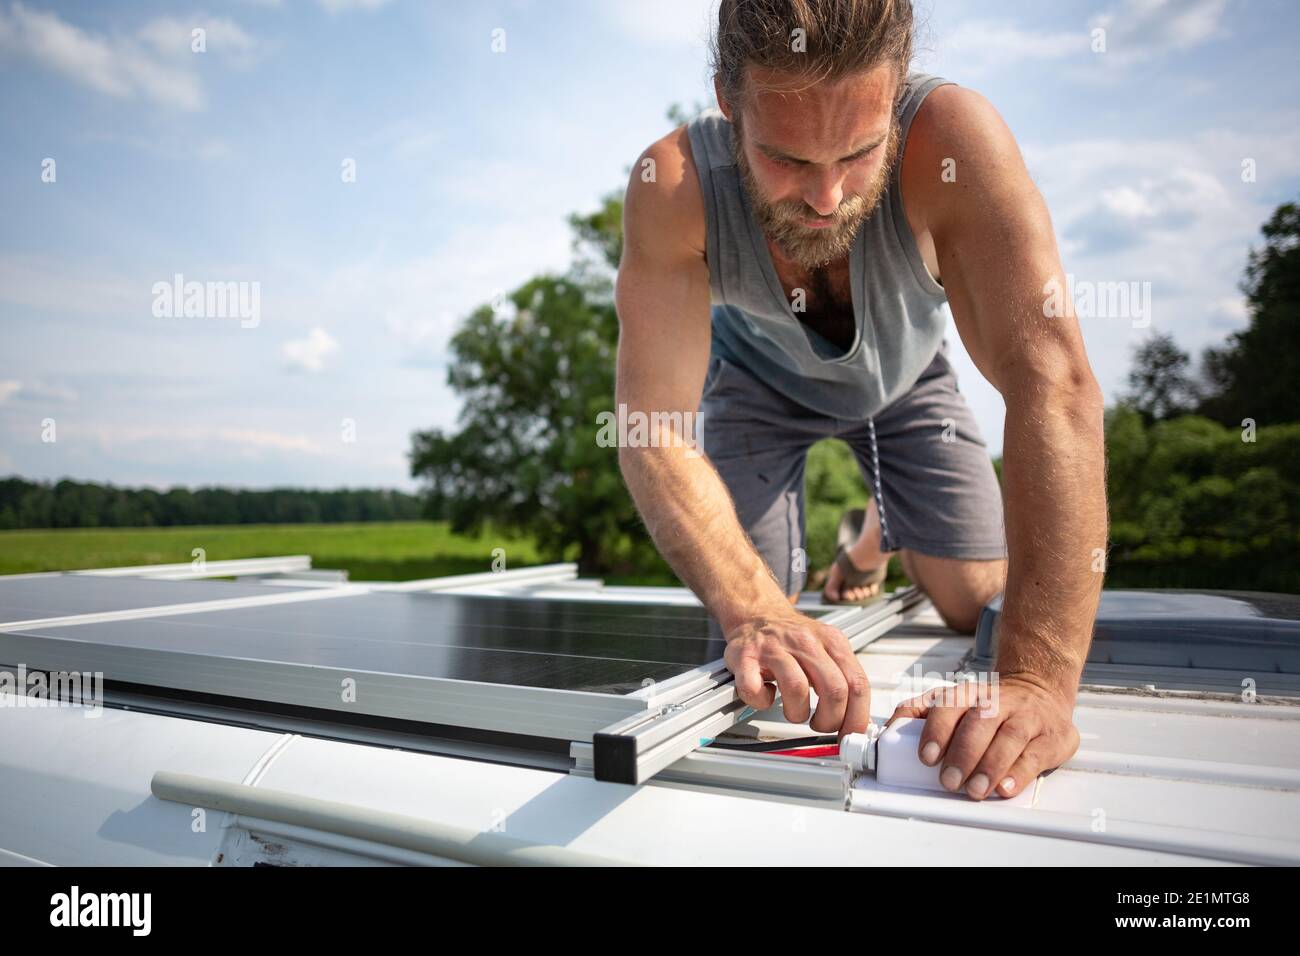 Hombre conectando los paneles solares en la parte superior de un campista van Foto de stock